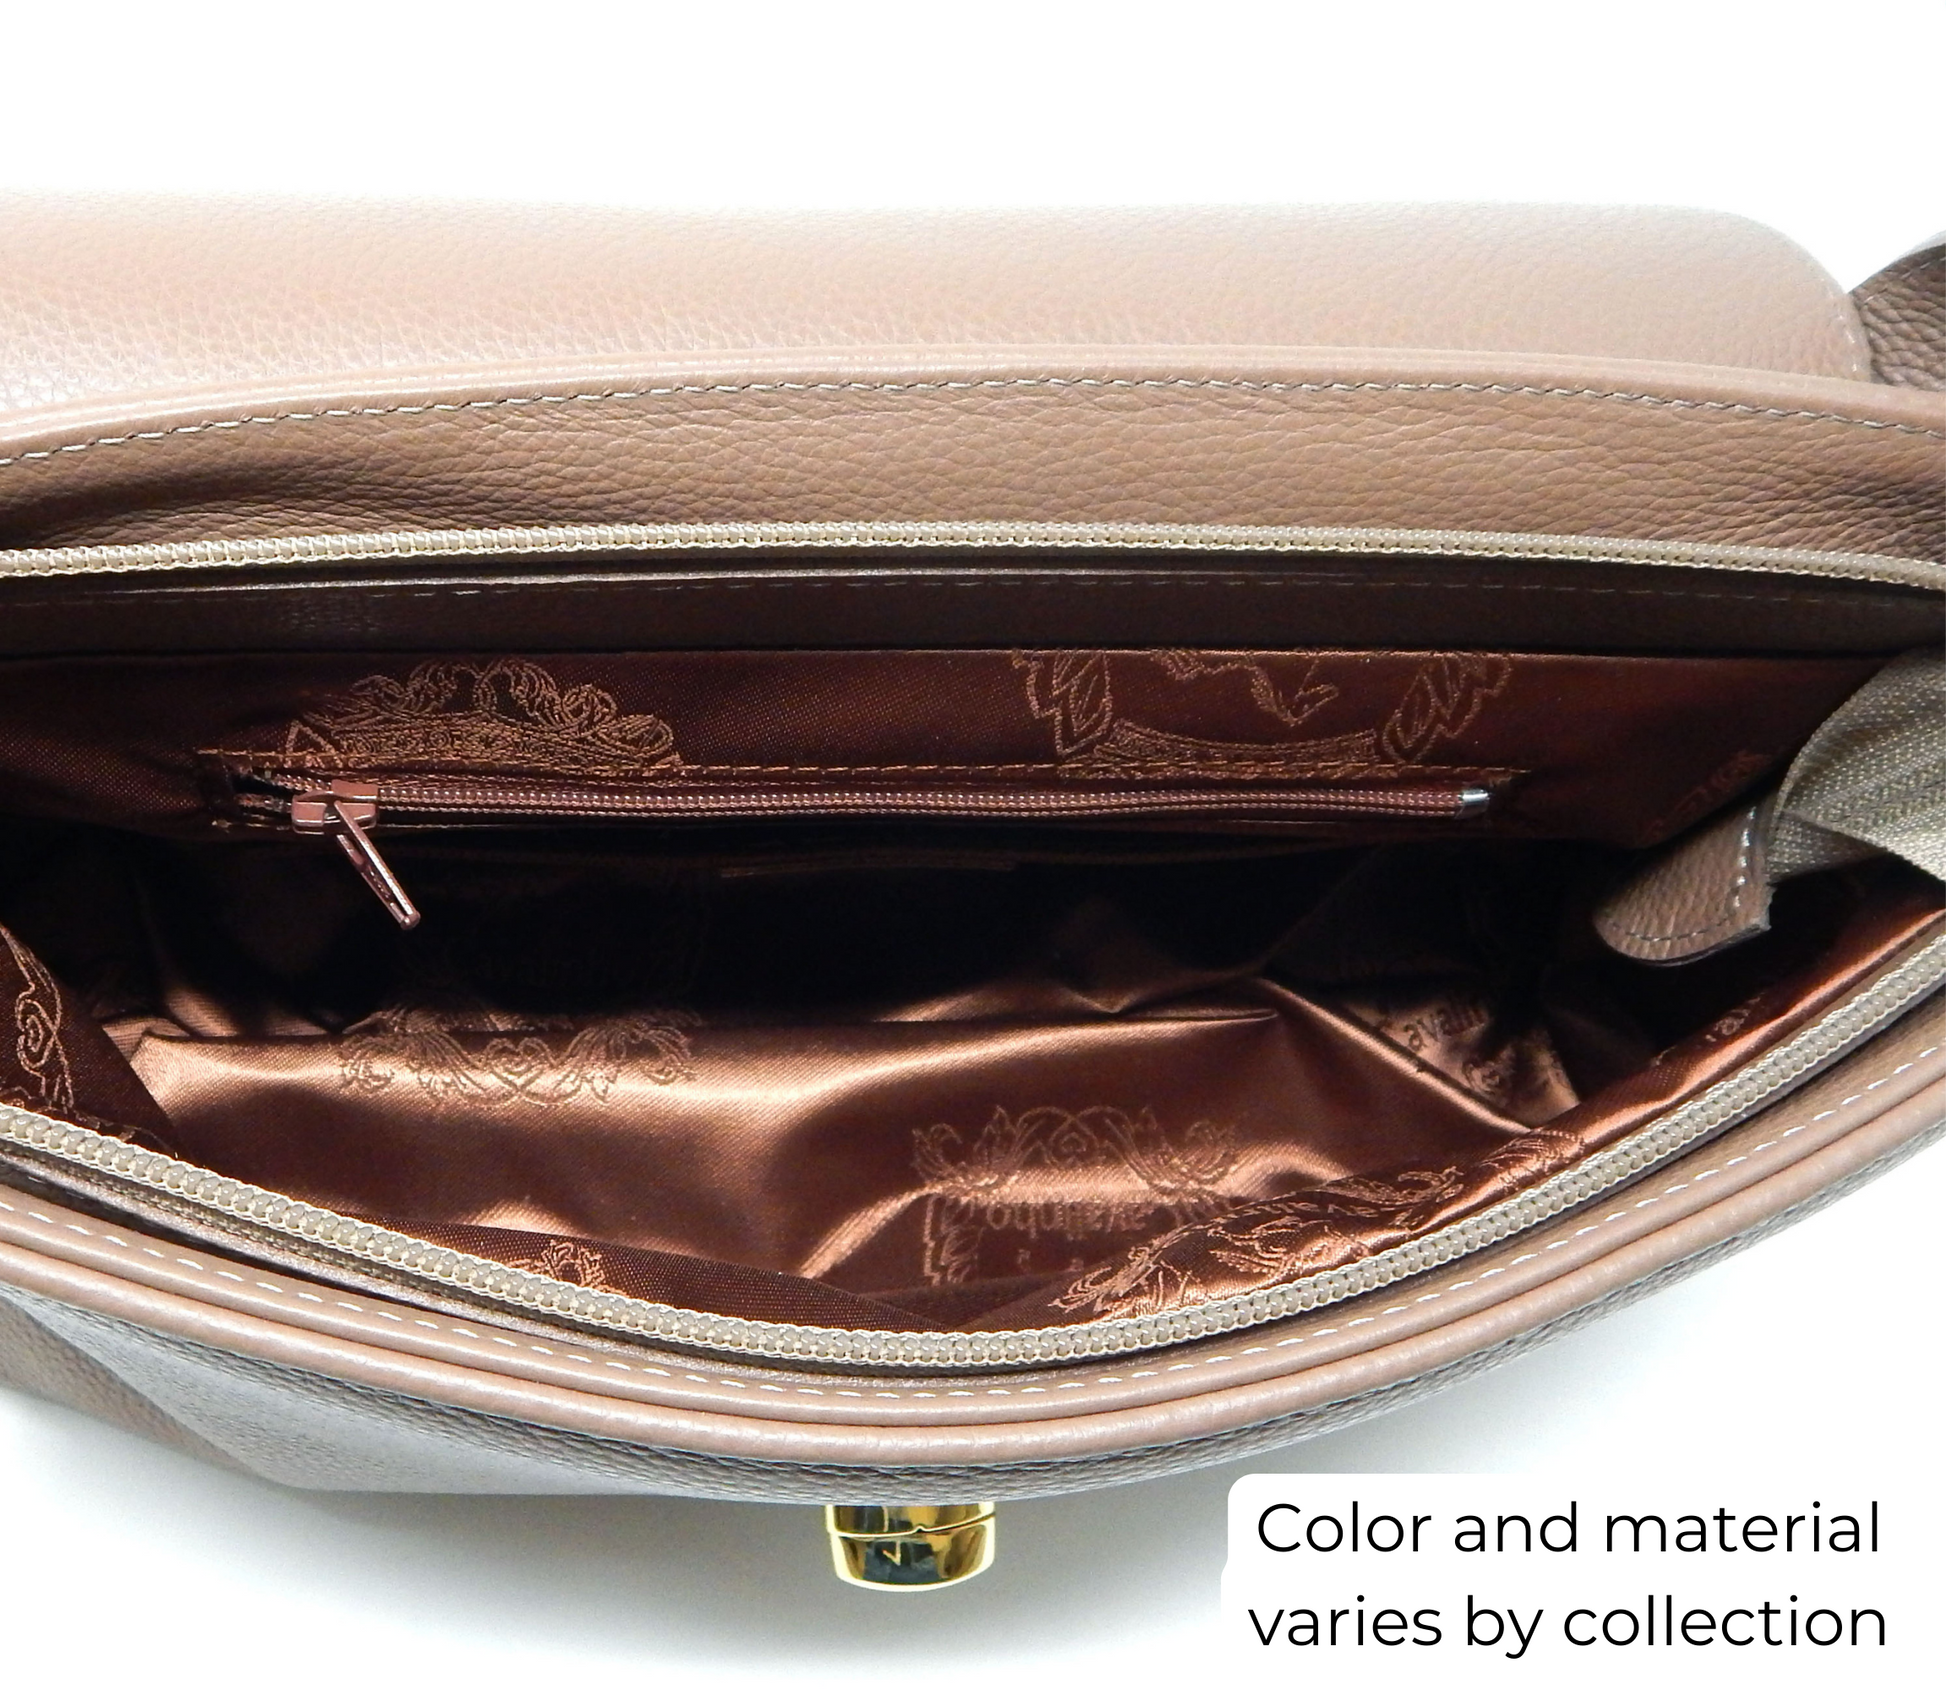 Cavalinho Muse Leather Handbag - DarkSeaGreen - inside_0514_5f2d91da-a39e-4a8c-a438-179c80163d10